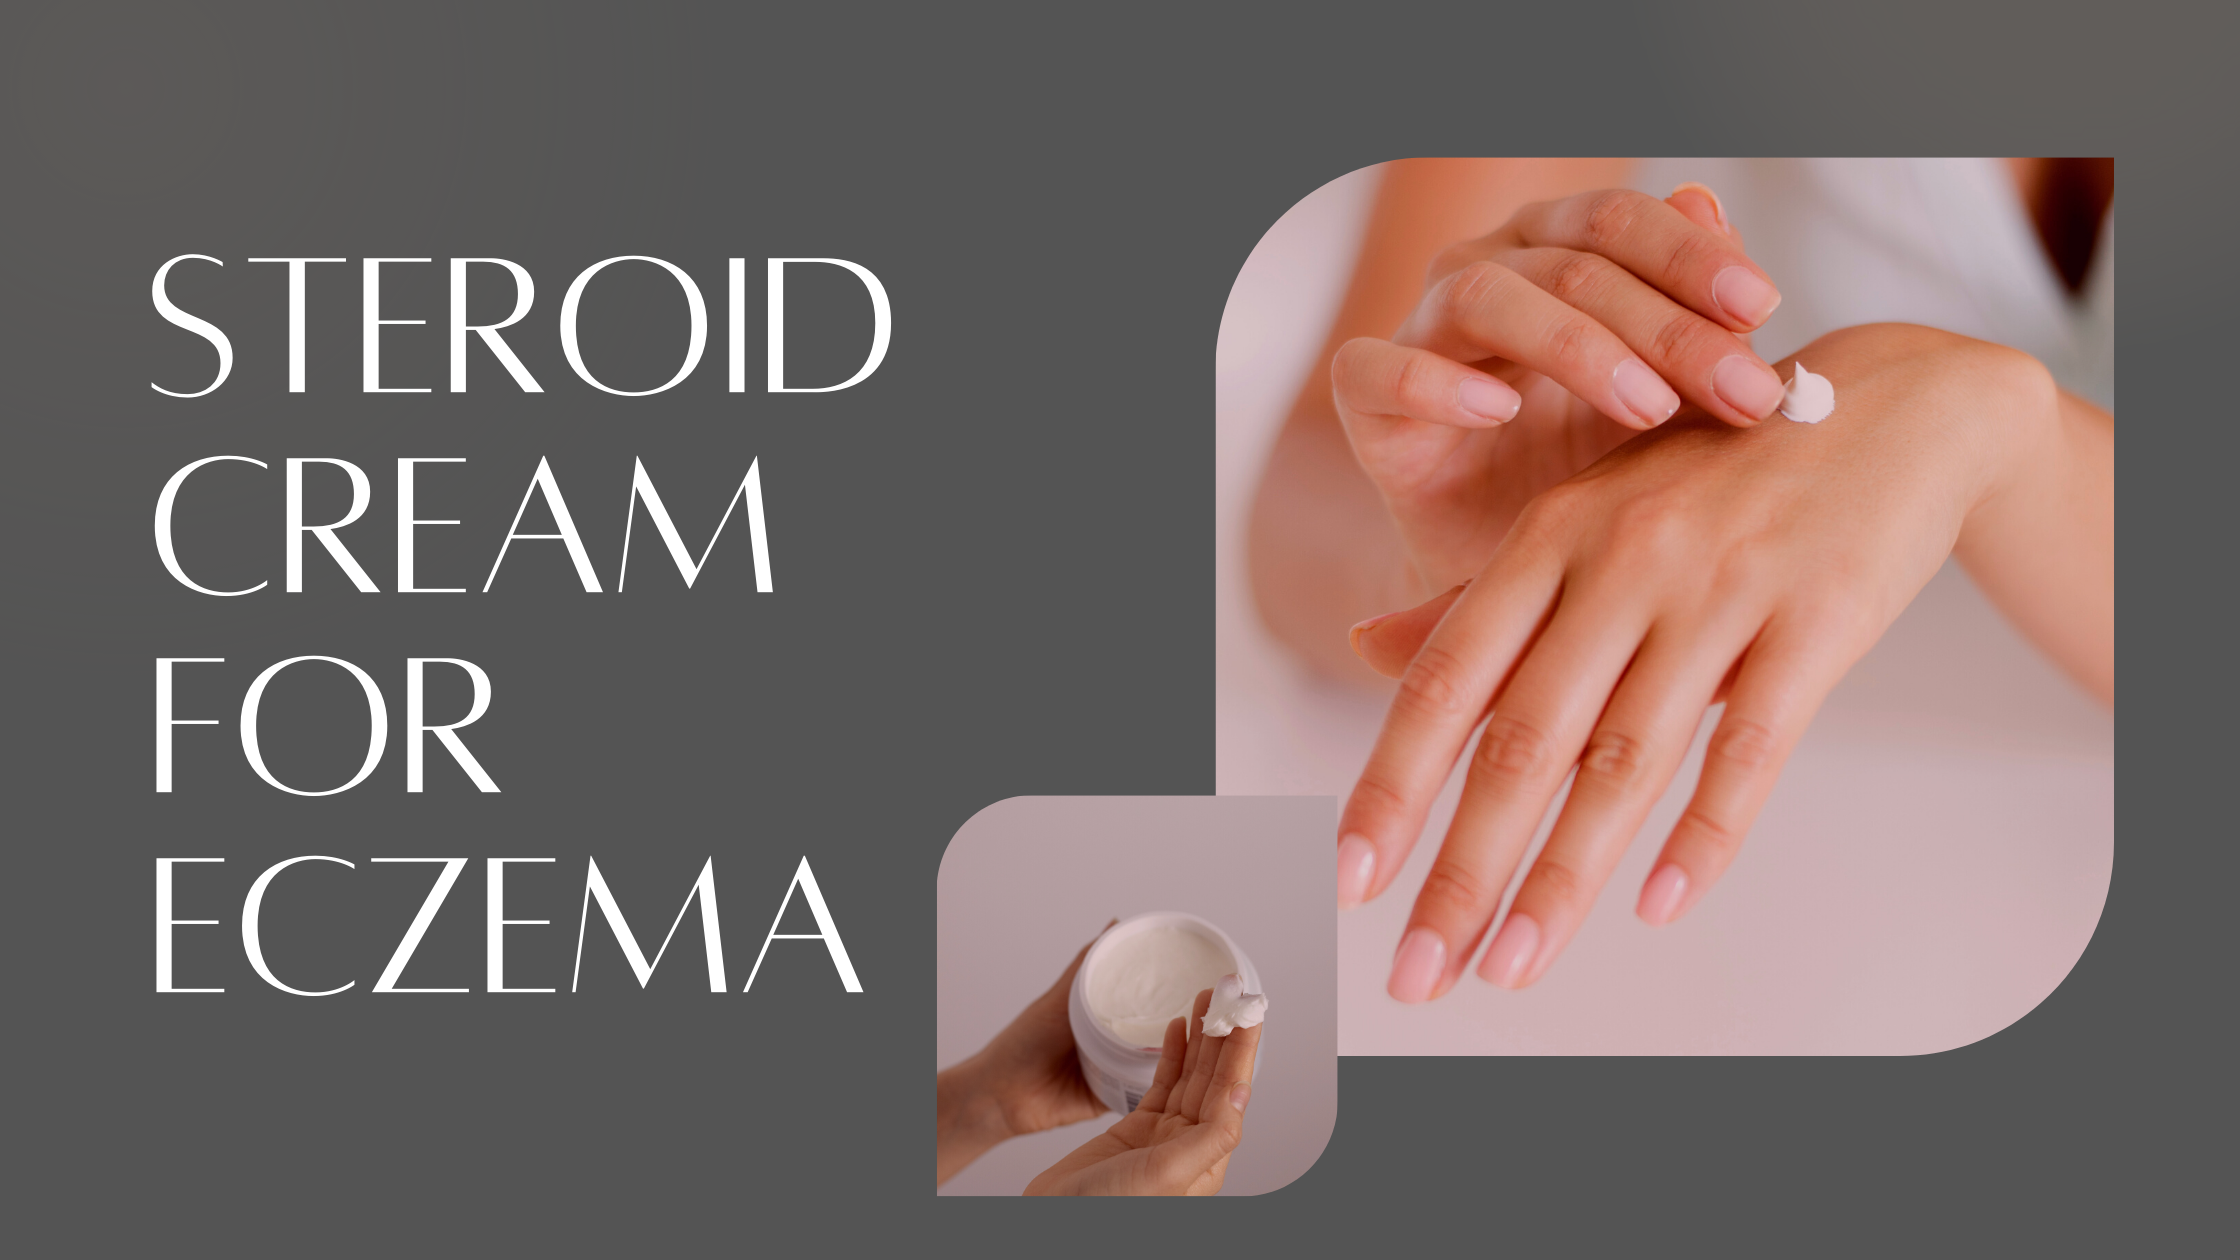 Steroid cream for Eczema